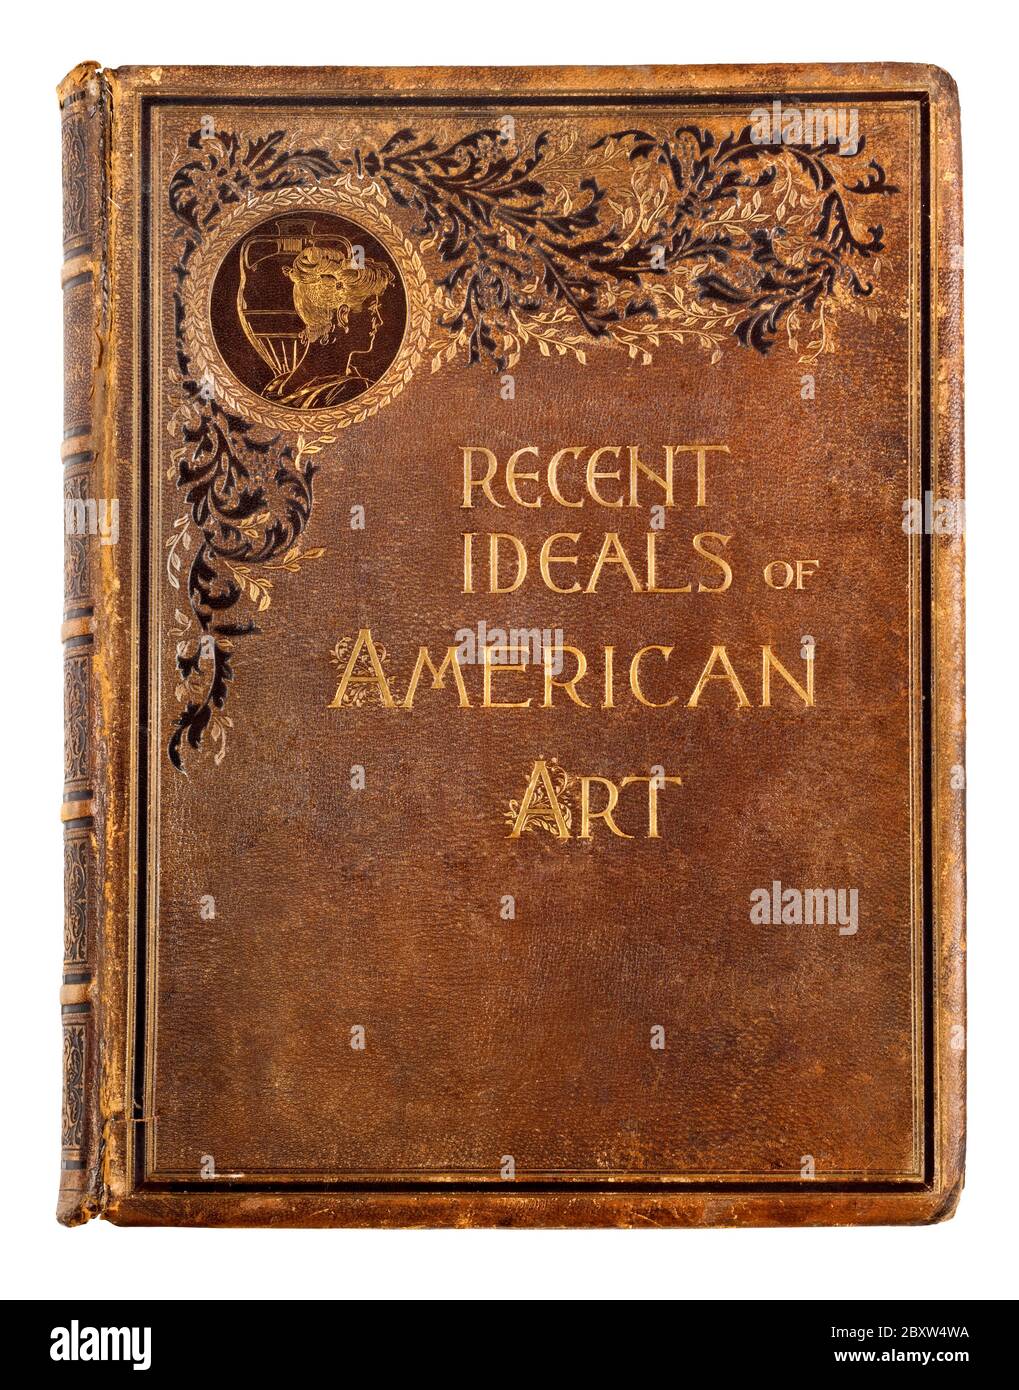 Une couverture en cuir rigide de 1890 du livre publié récemment idéaux of American Art Banque D'Images